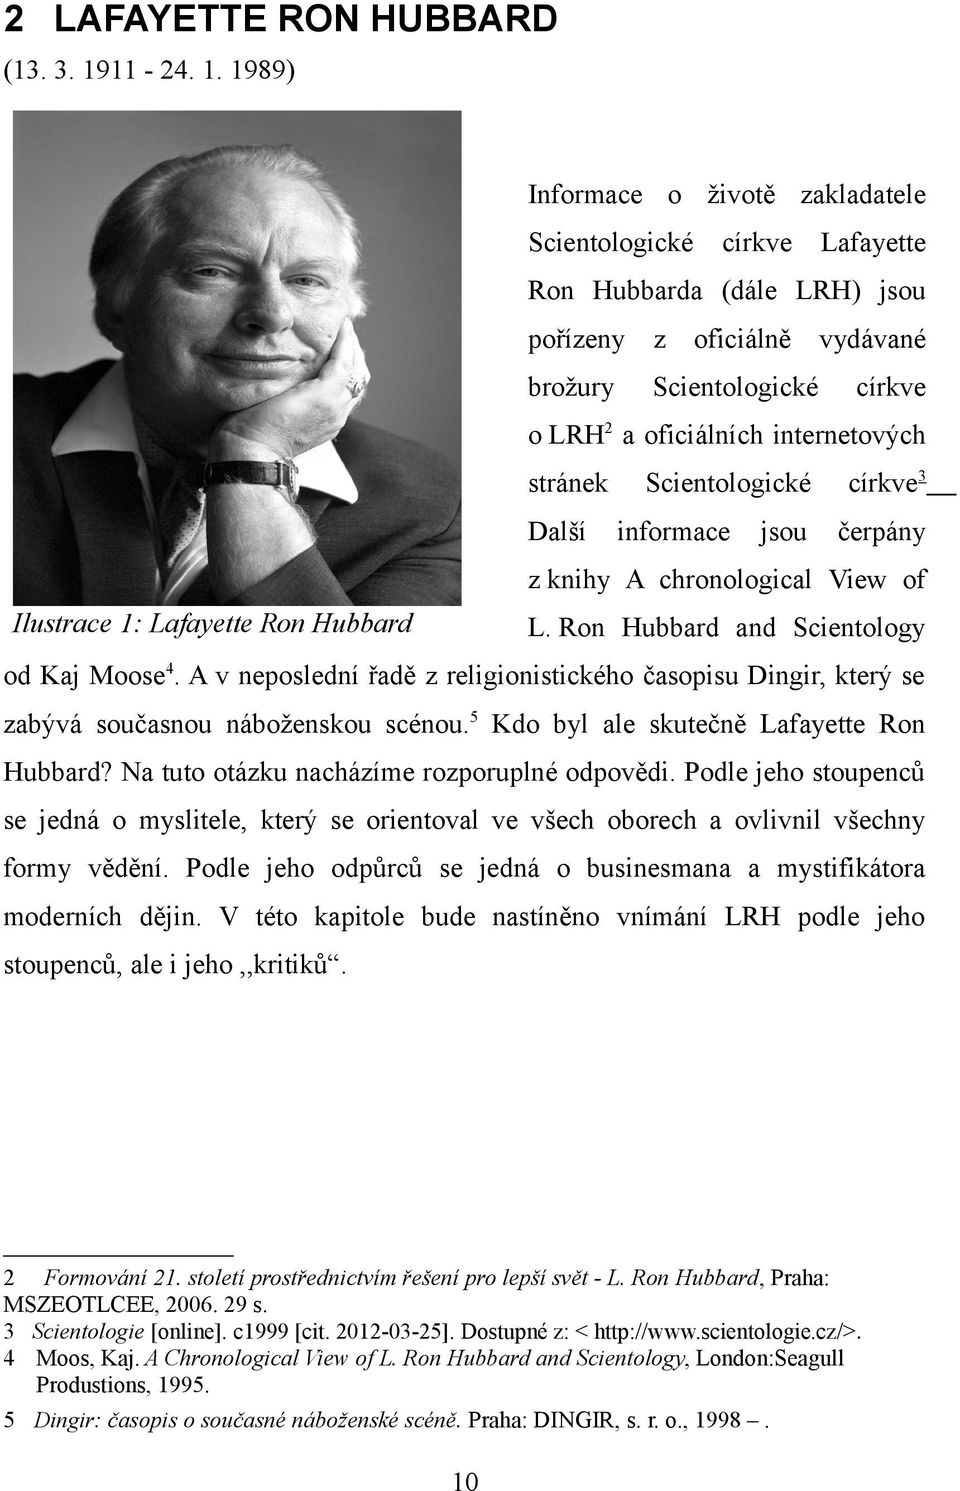 1989) Informace o životě zakladatele Scientologické církve Lafayette Ron Hubbarda (dále LRH) jsou pořízeny z oficiálně vydávané brožury Scientologické církve o LRH 2 a oficiálních internetových